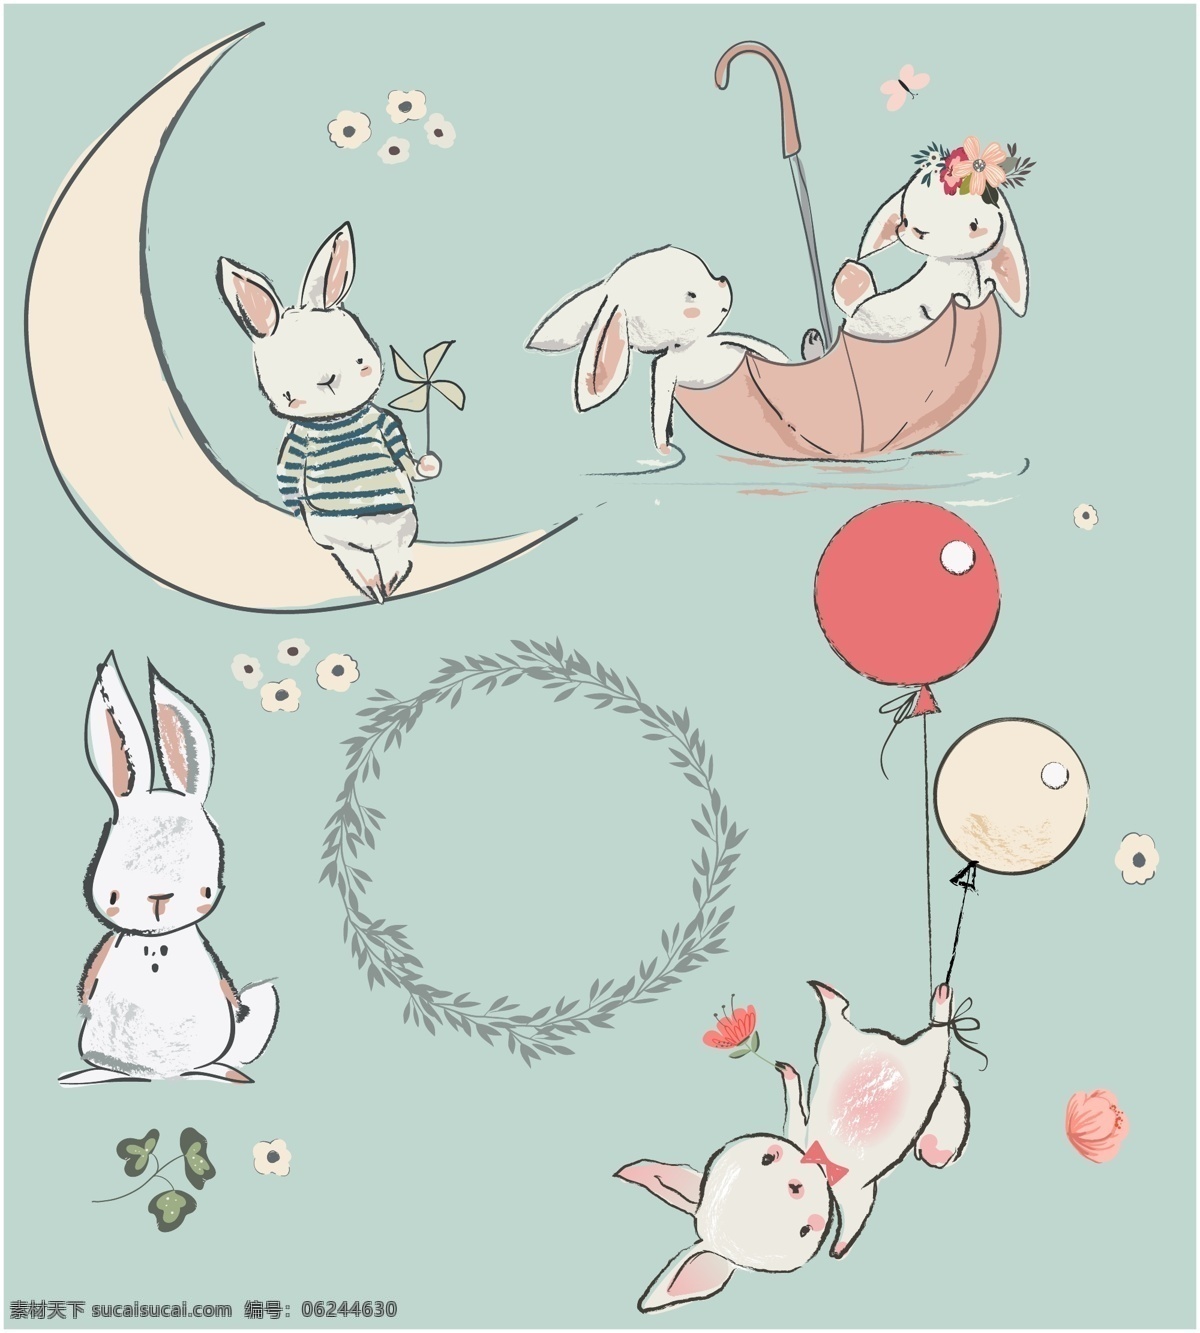 卡通兔子 小白兔 兔 可爱兔子 手绘兔子 宠物 萌宠 森系兔子 q版兔子 插画 手绘 童话动物兔子 背景底纹 底纹边框 矢量图 卡通头像